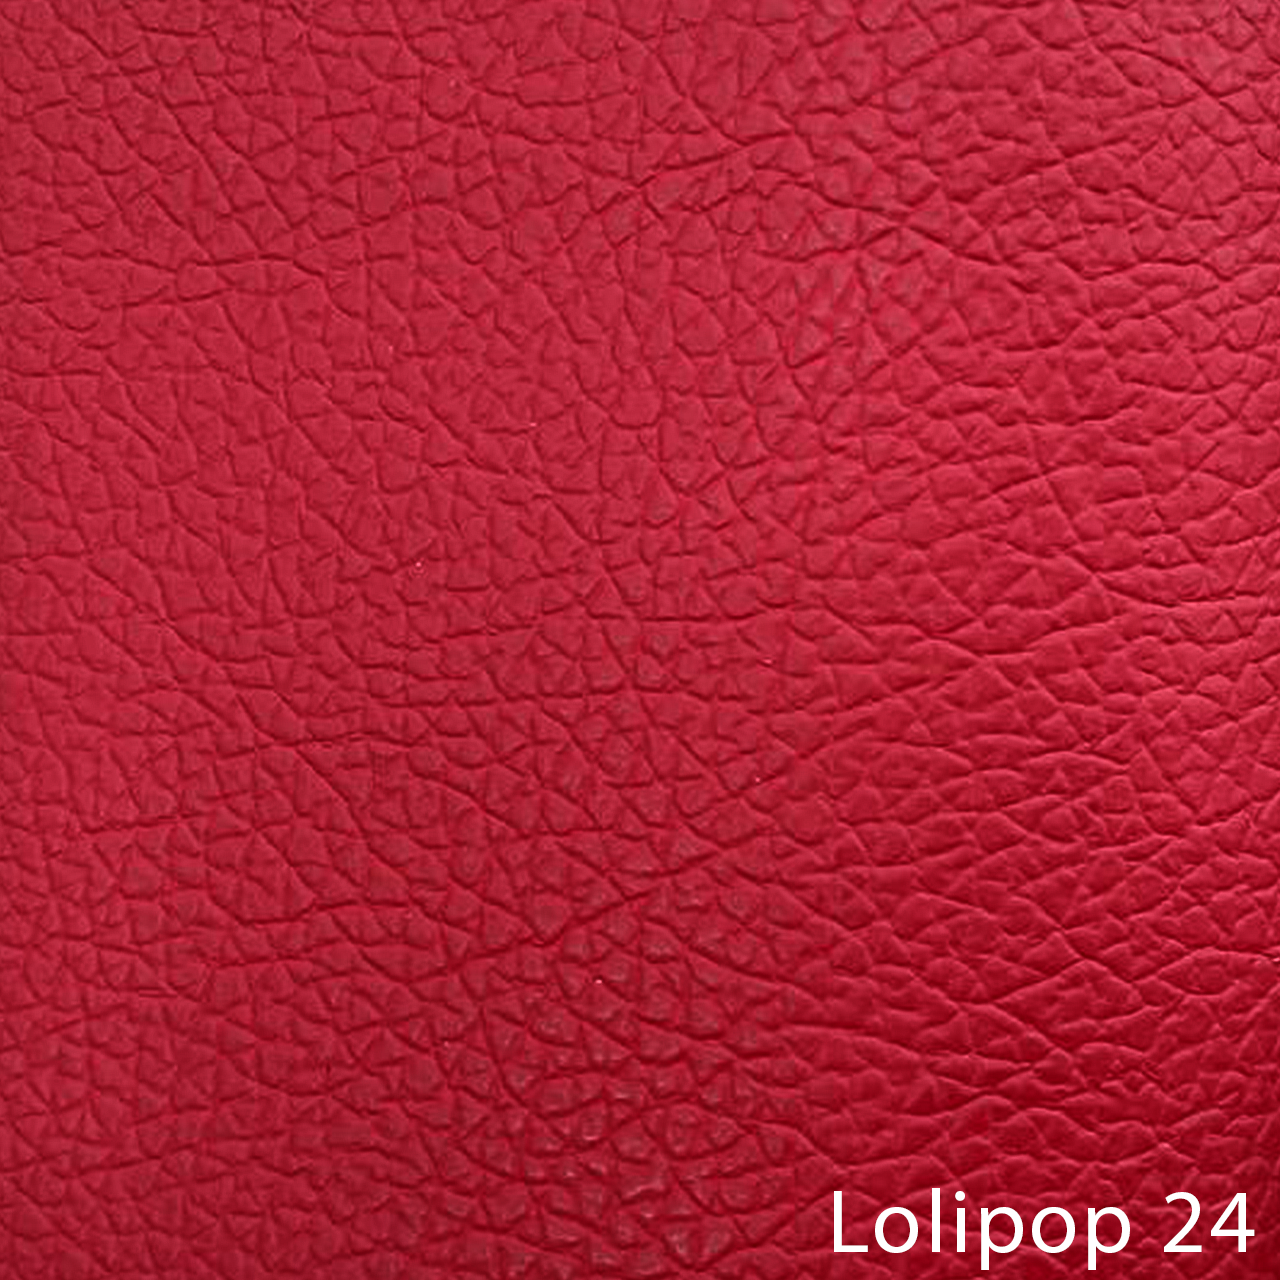 Lolipop 24